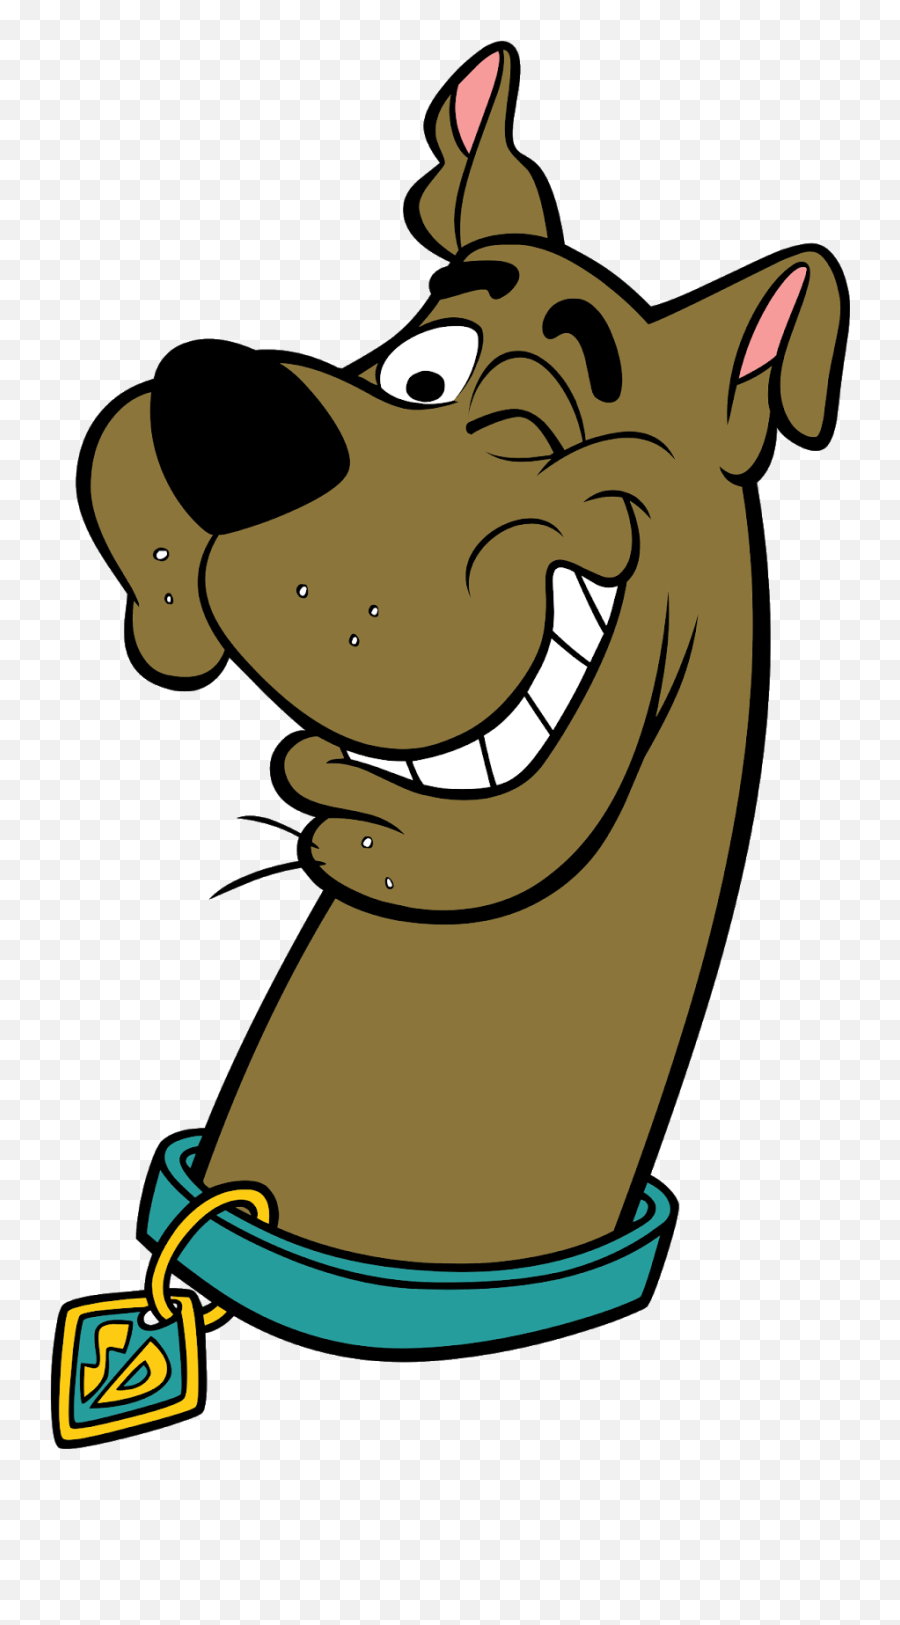 Download Scooby Doo Cartoon - Transparent Scooby Doo Head Png,Wink Png